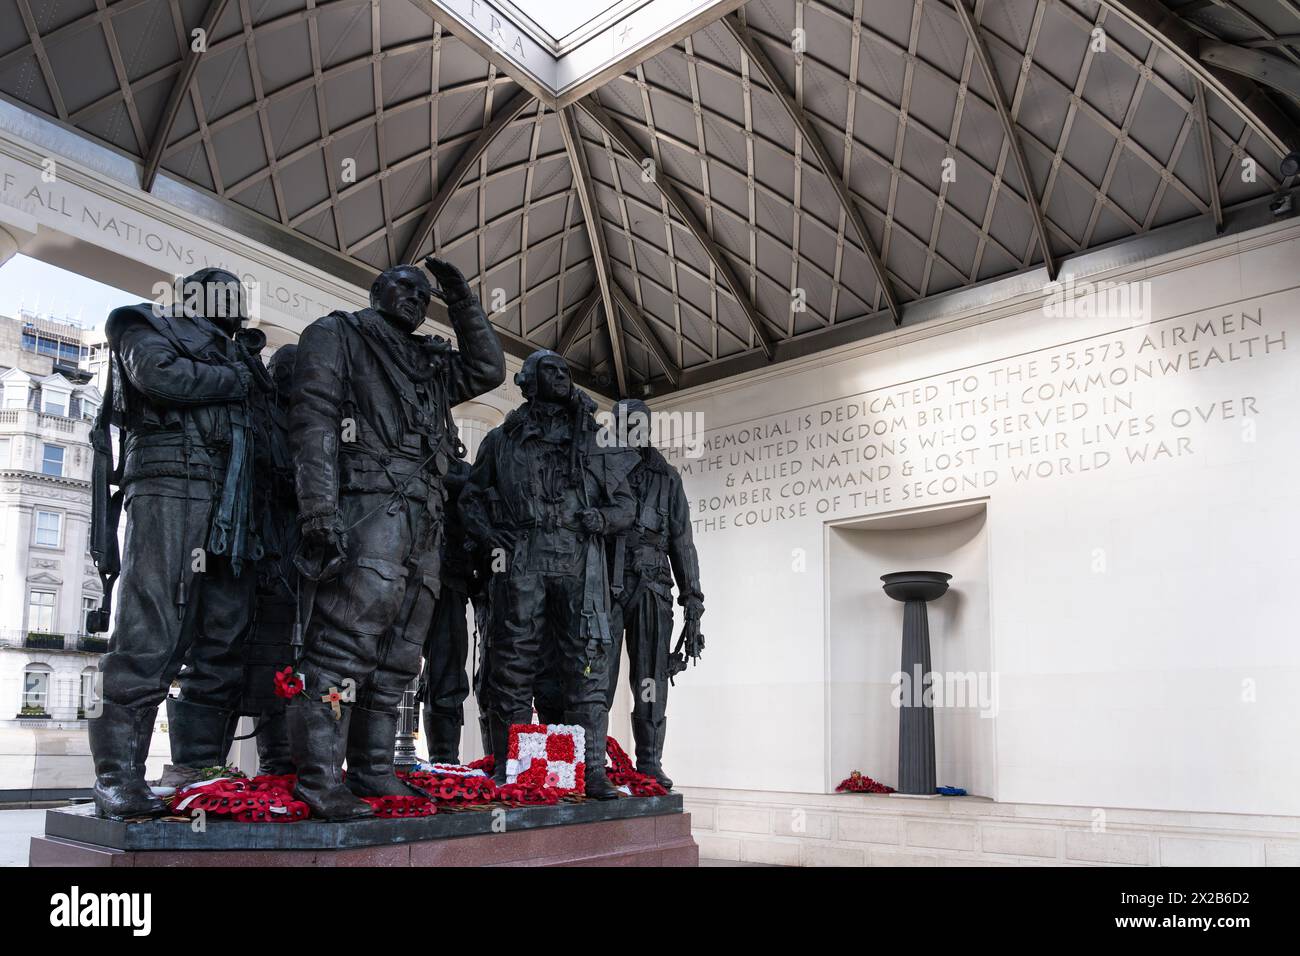 Monument commémoratif du Bomber Command avec des statues en bronze représentant les 55 573 aviateurs du Bomber Command qui ont perdu la vie dans la seconde Guerre mondiale Green Park, Londres Banque D'Images